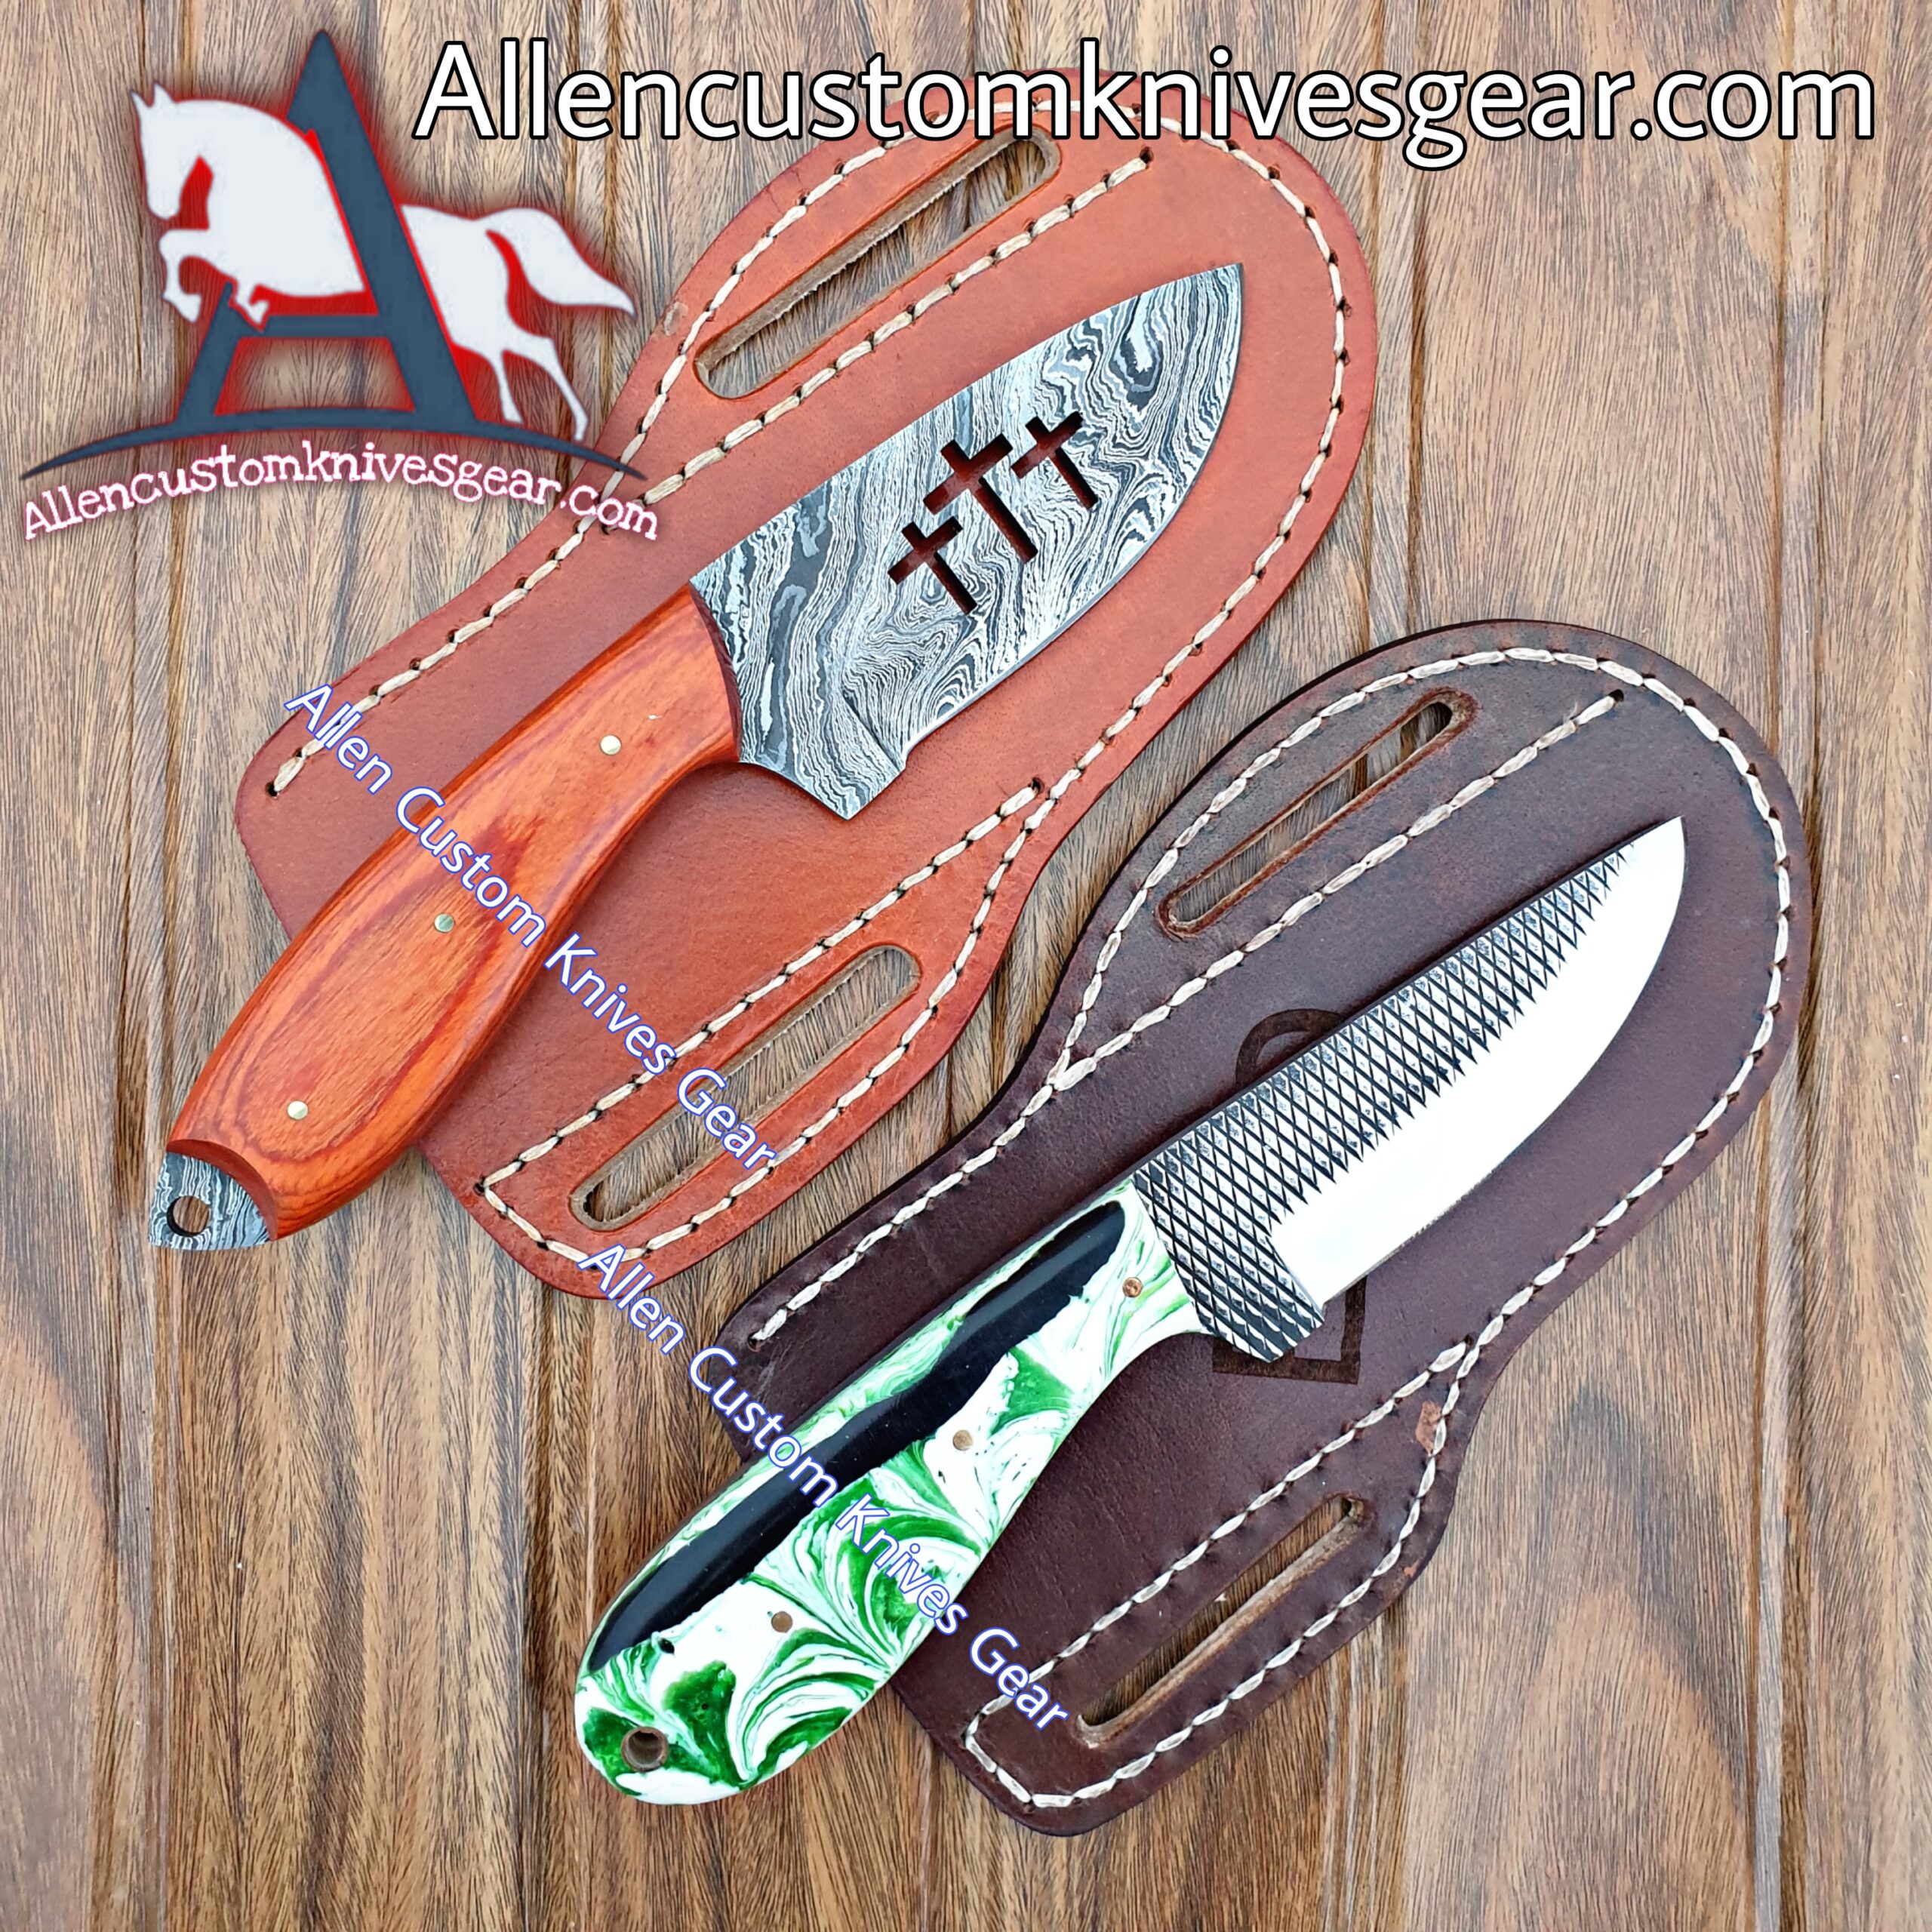 Handmade High Polish Cowboy, Hunting, Skinner Knives – Allen Custom Knives  Gear